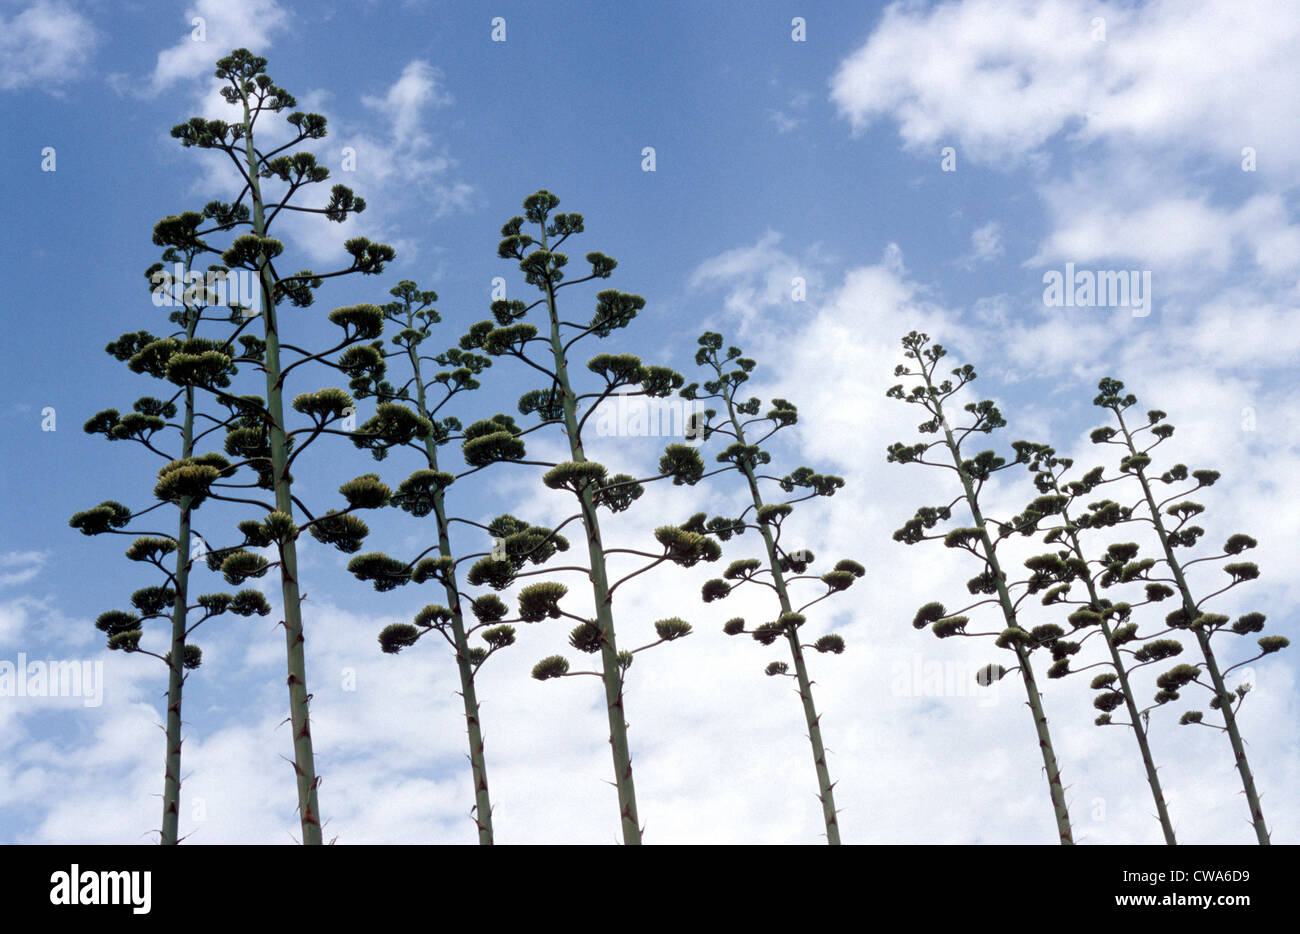 Las inflorescencias de Agavenpflanzen ligeramente contra un cielo nublado Foto de stock